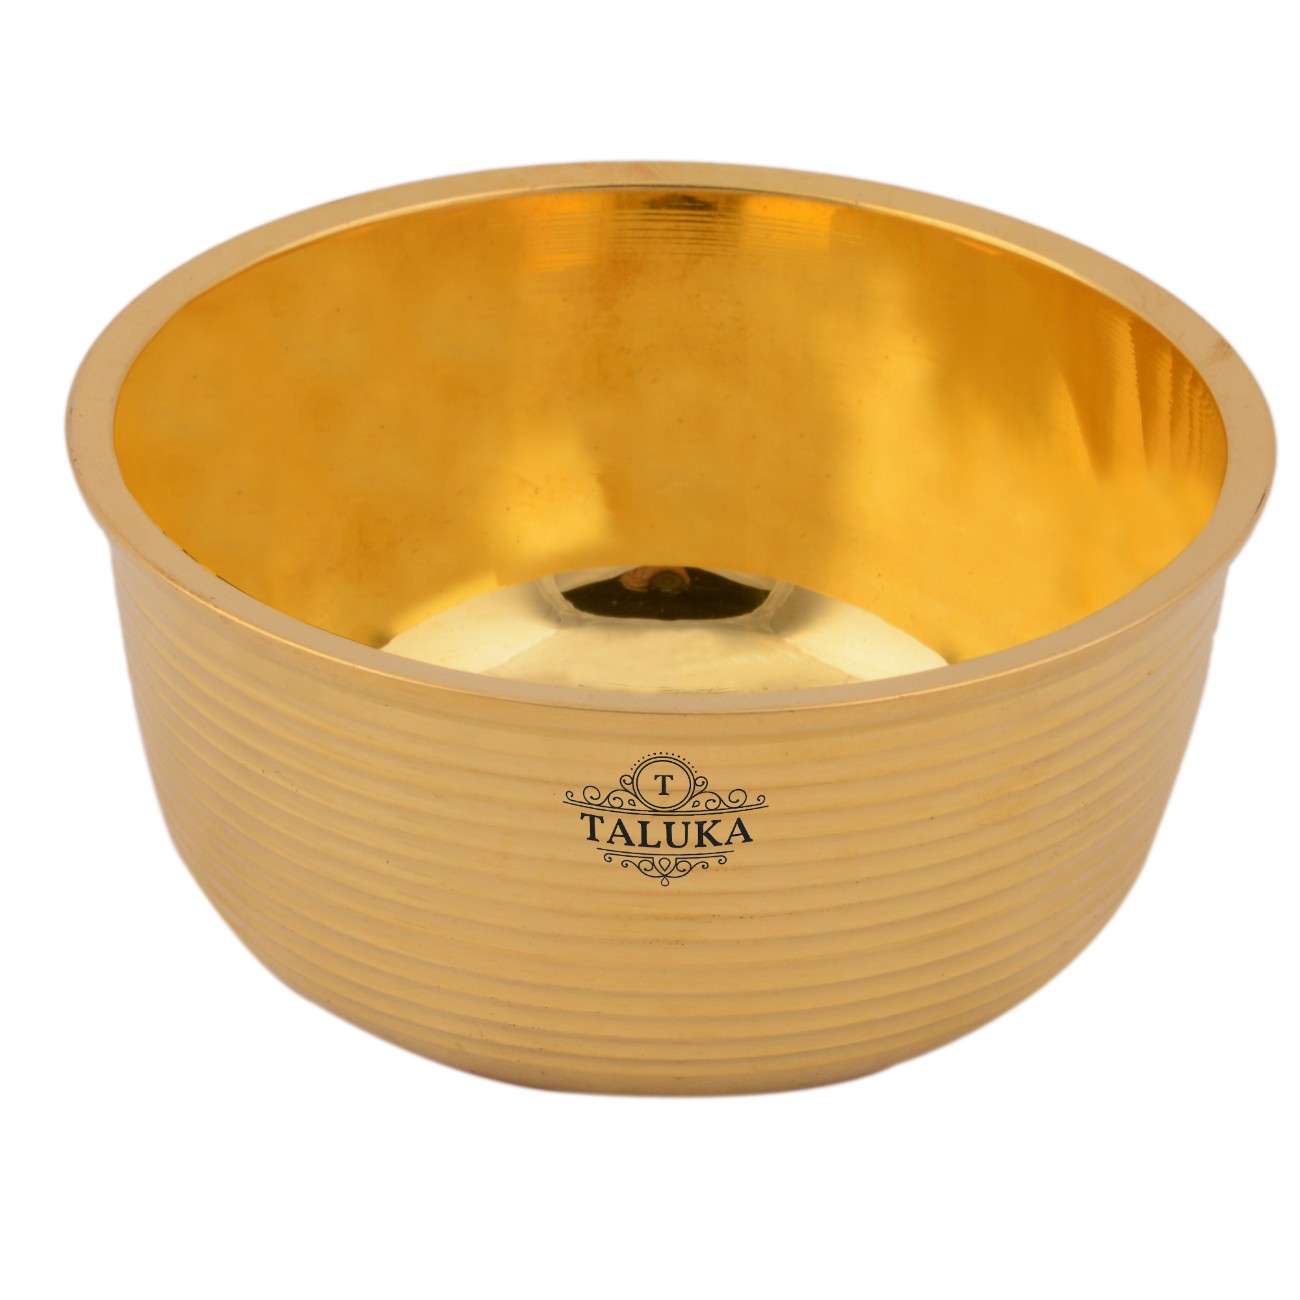 Brass Full Ribbed Serving Bowl Katori For Tableware Restaurant Home Hotel 350 ML